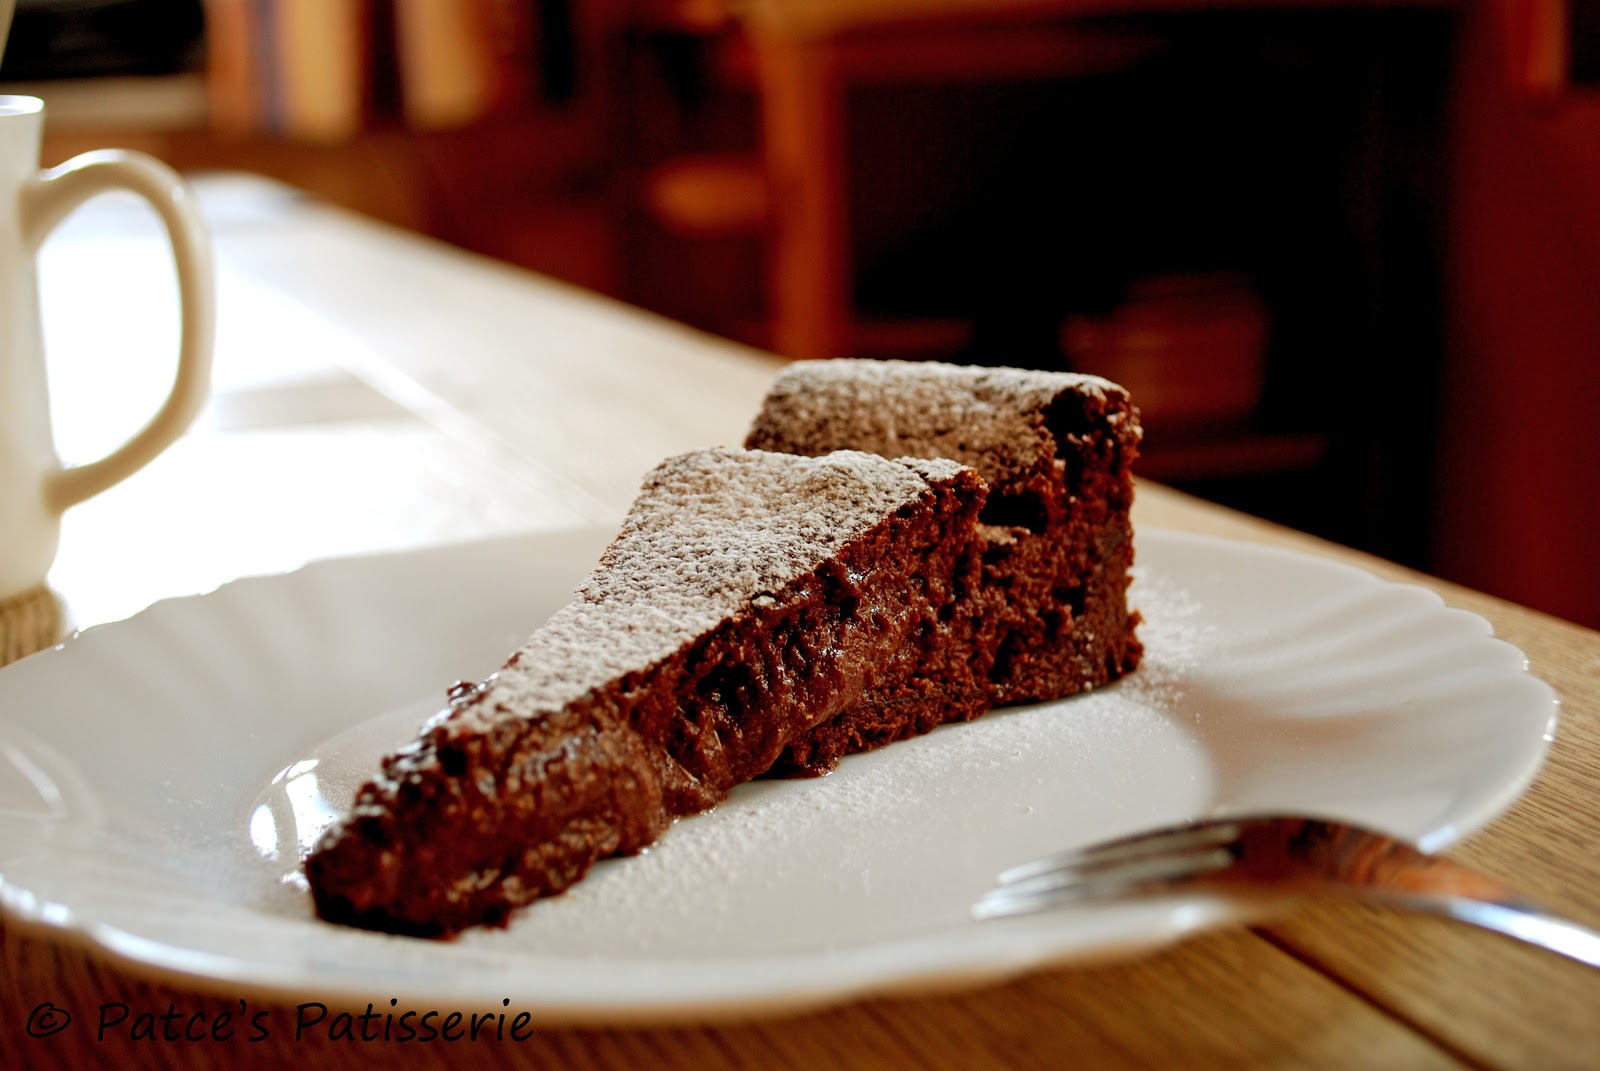 Patces Patisserie: Die schokoladigste Schoko-Schokoladen-Tarte